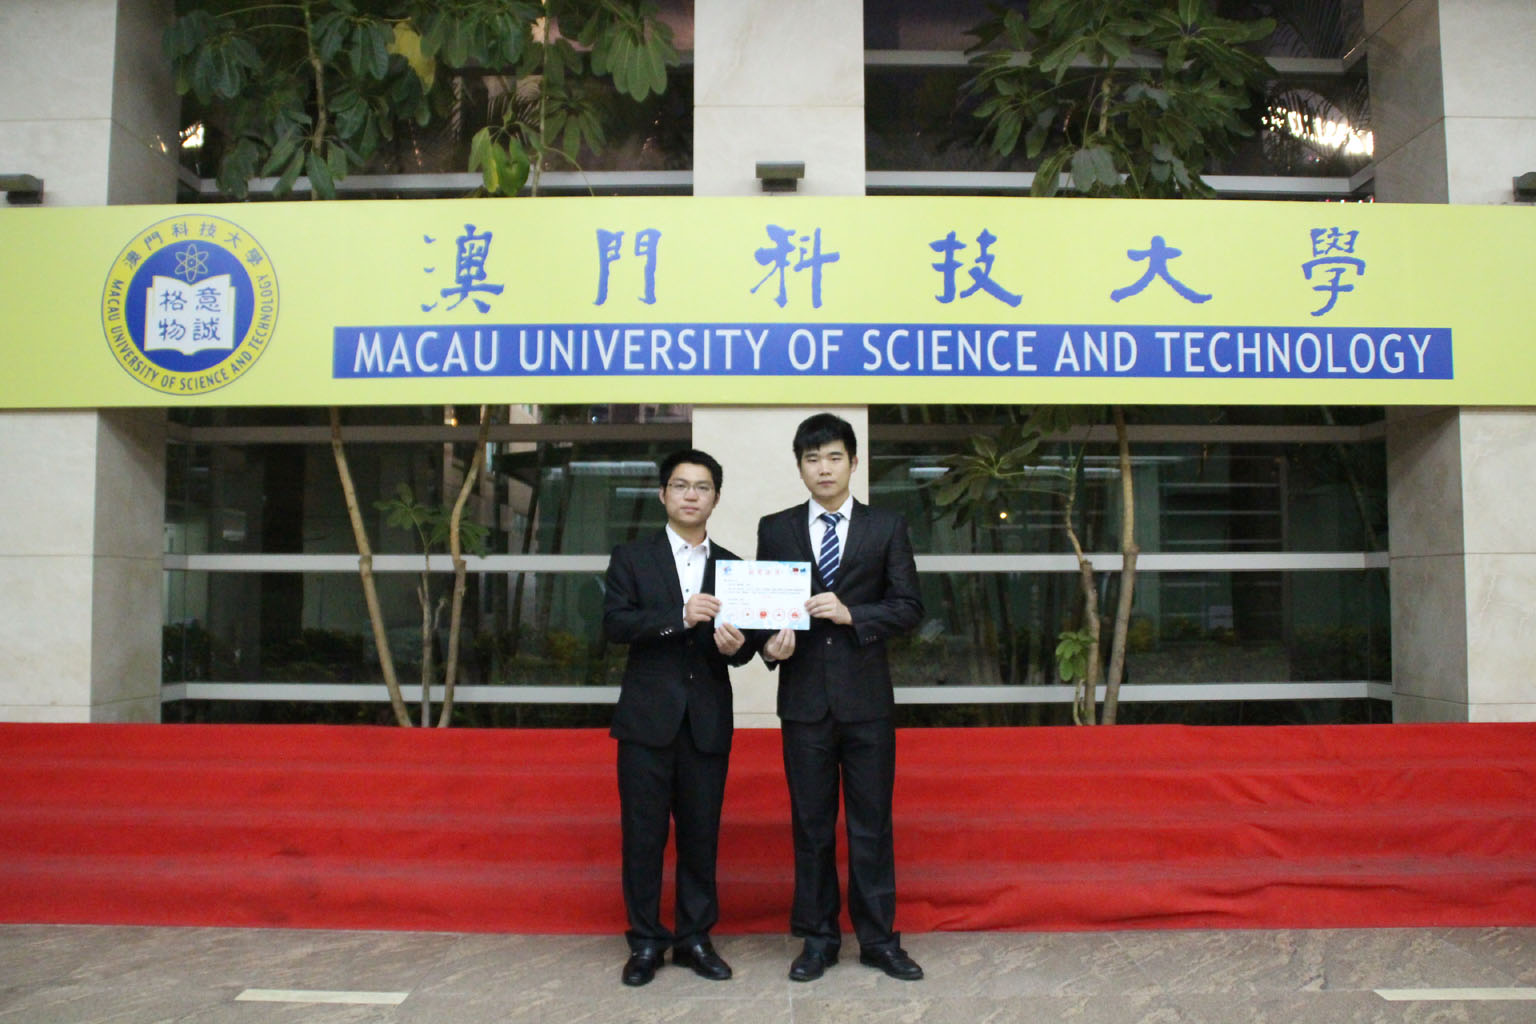 P1 Liang-Yong Xia and Xu-Xin Lin won the Second Place Prize